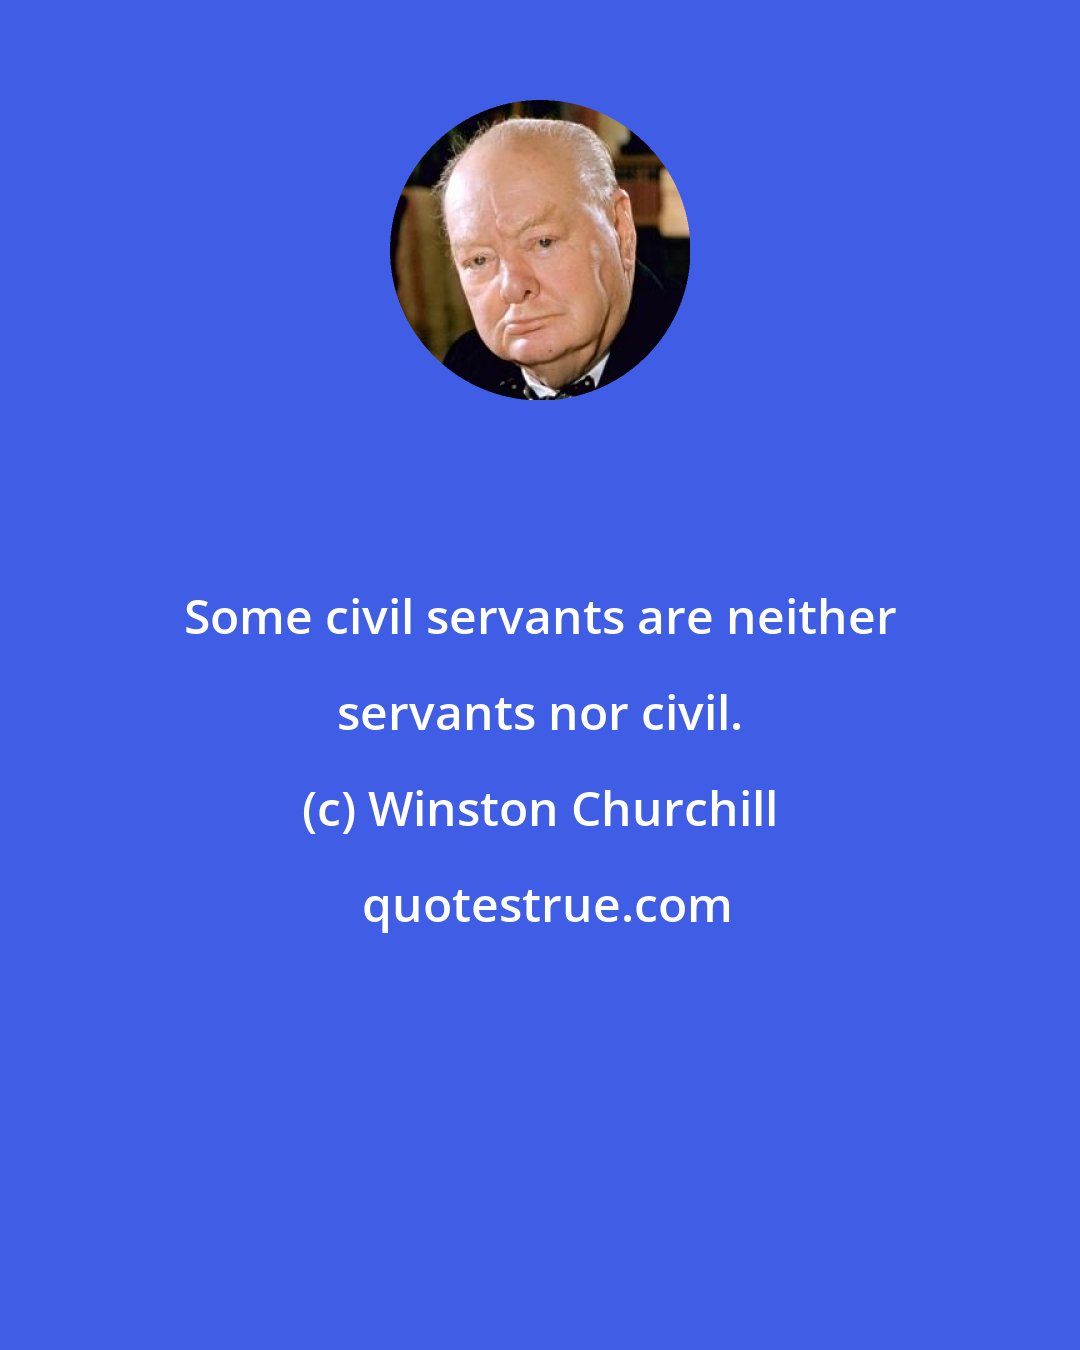 Winston Churchill: Some civil servants are neither servants nor civil.